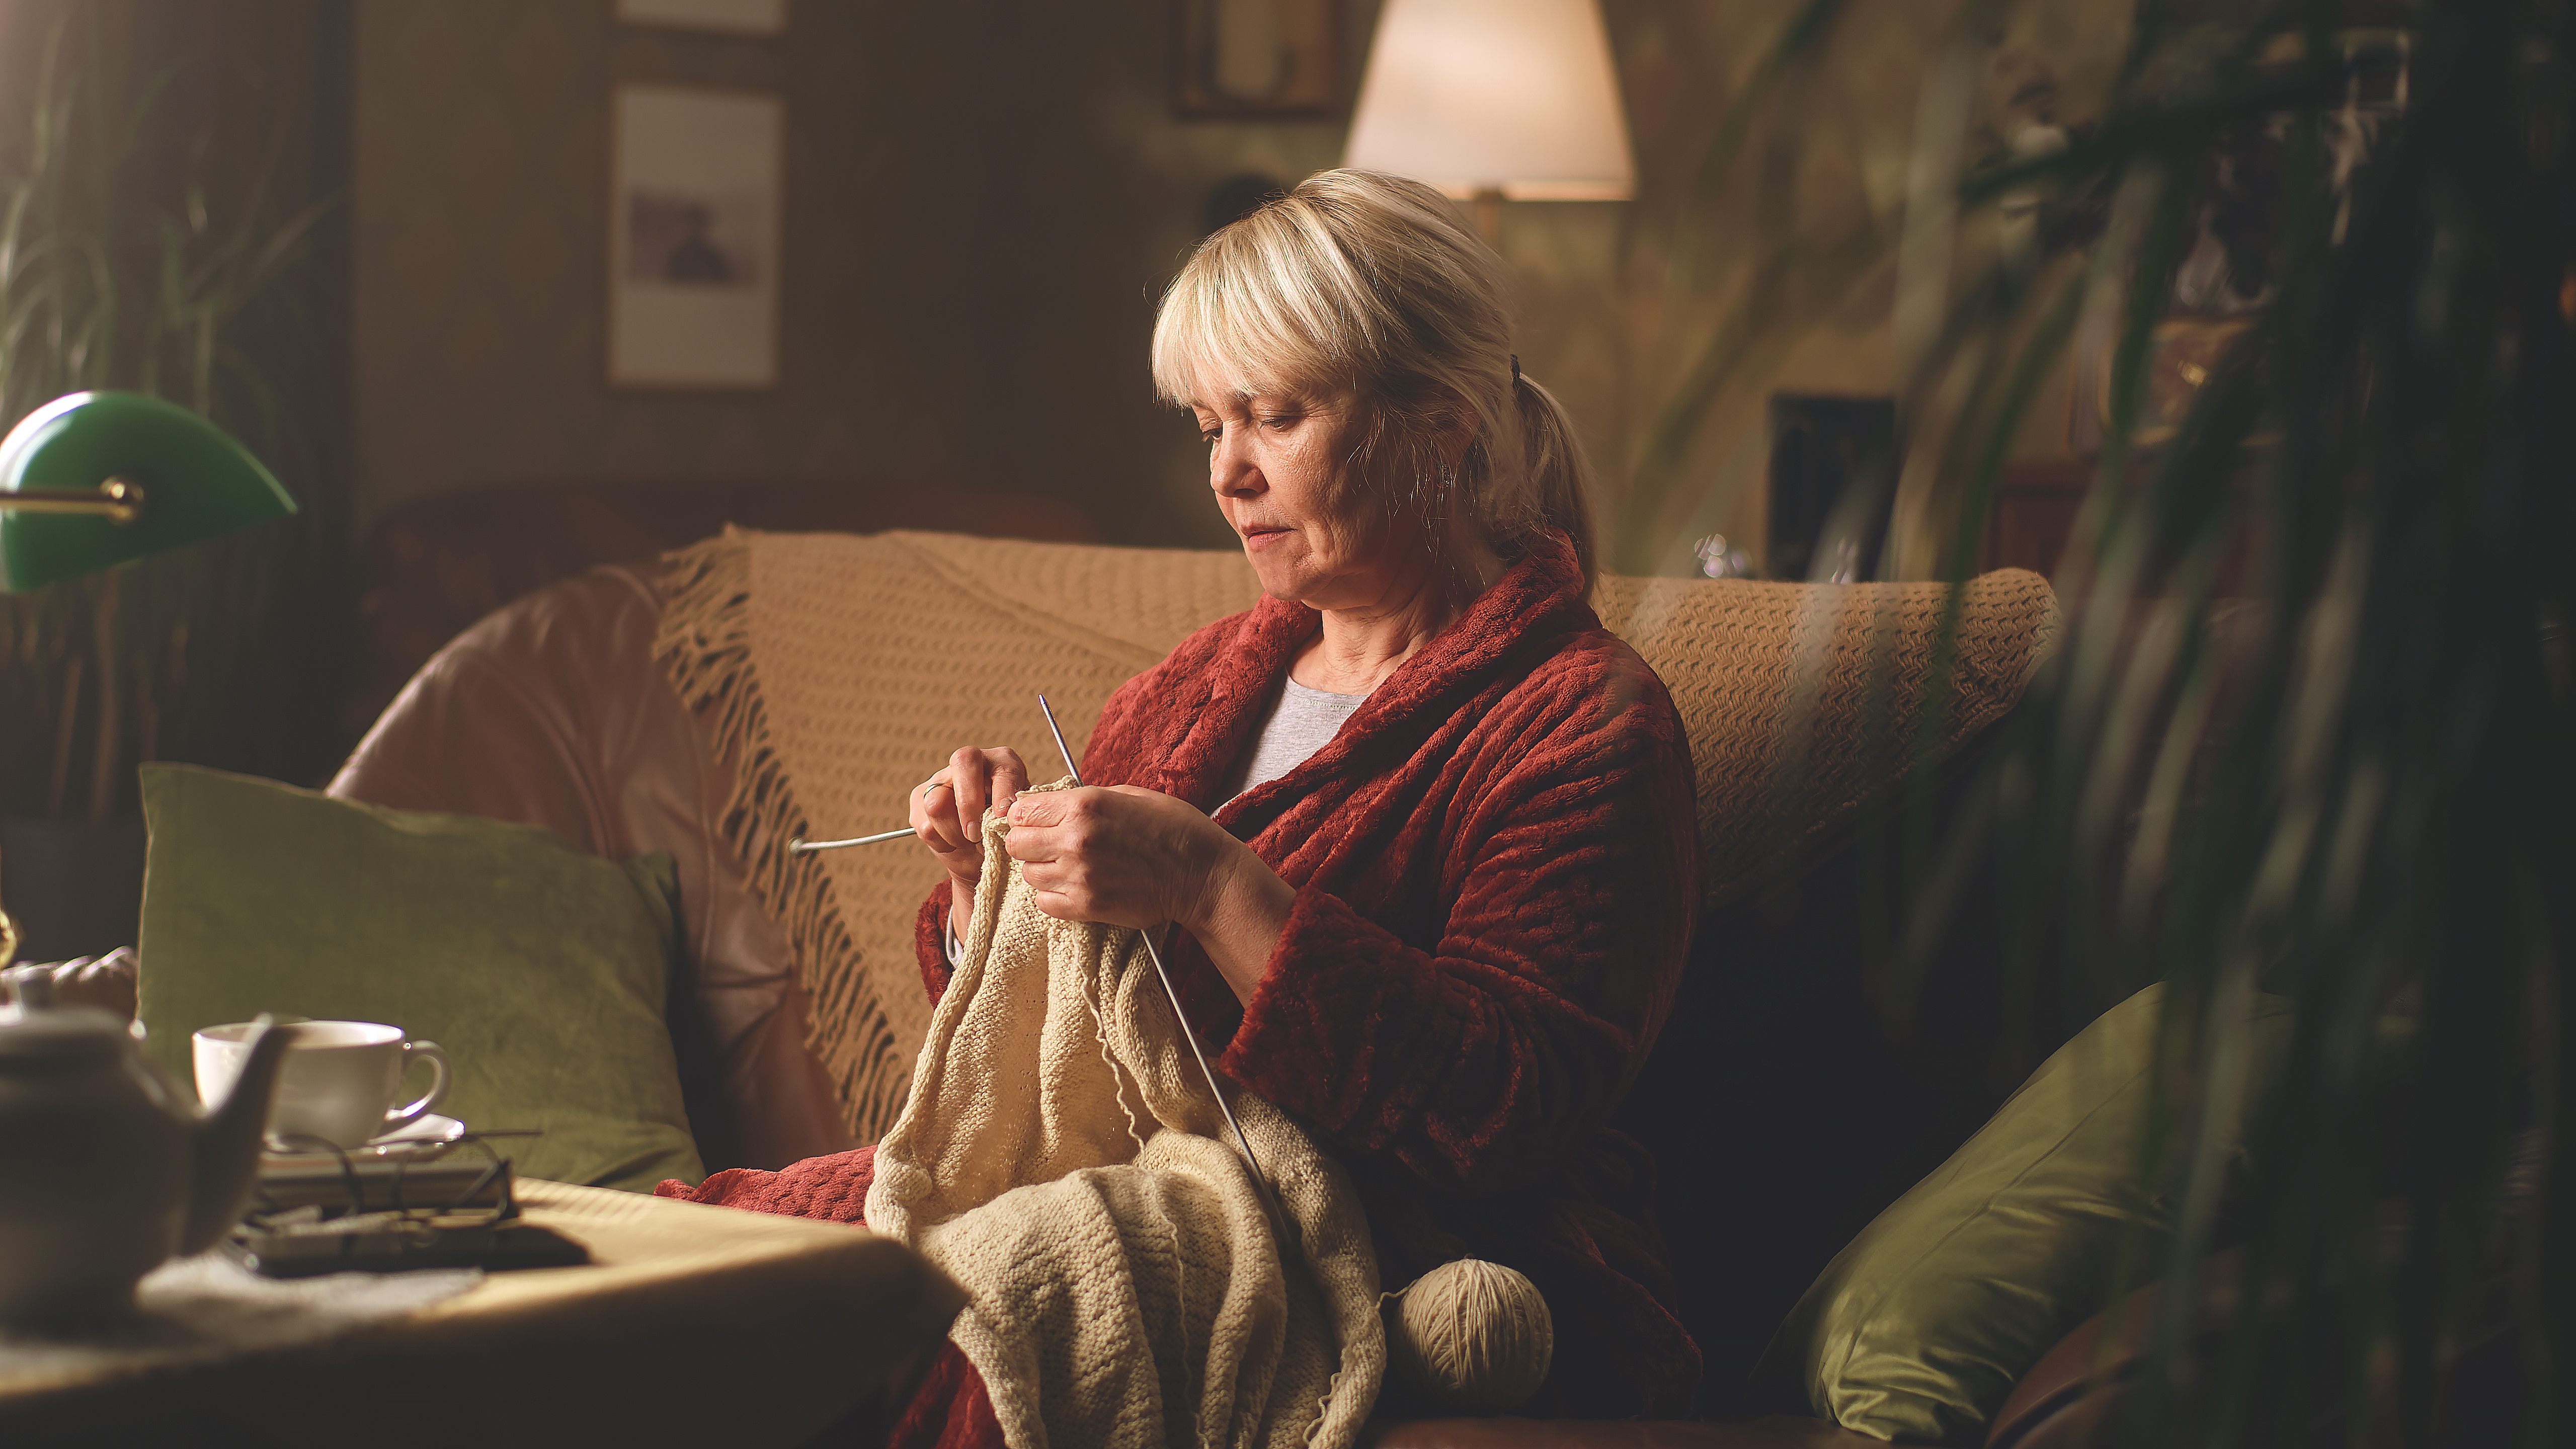 Eine ältere Frau strickt einen Pullover, während sie auf dem Sofa sitzt | Quelle: Shutterstock